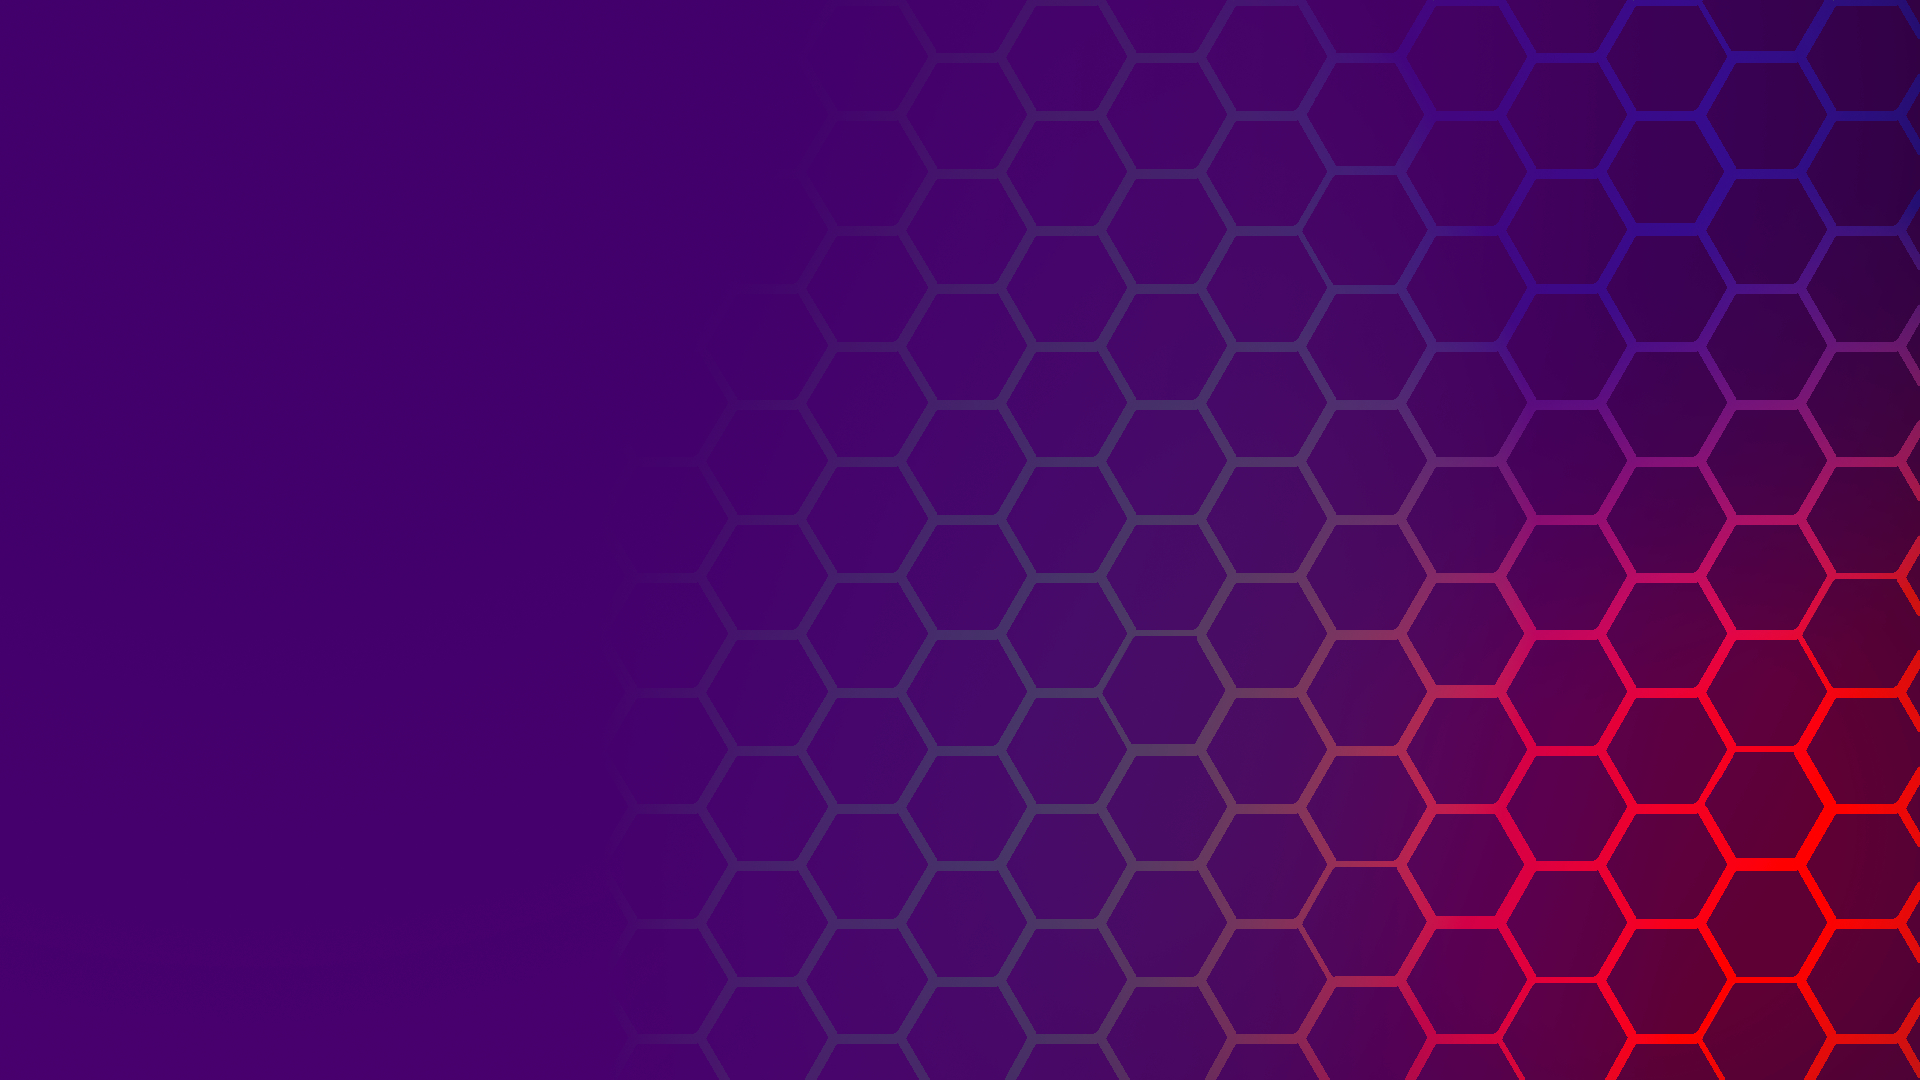 Hexagon HD Wallpapers | 4K Backgrounds - Wallpapers Den